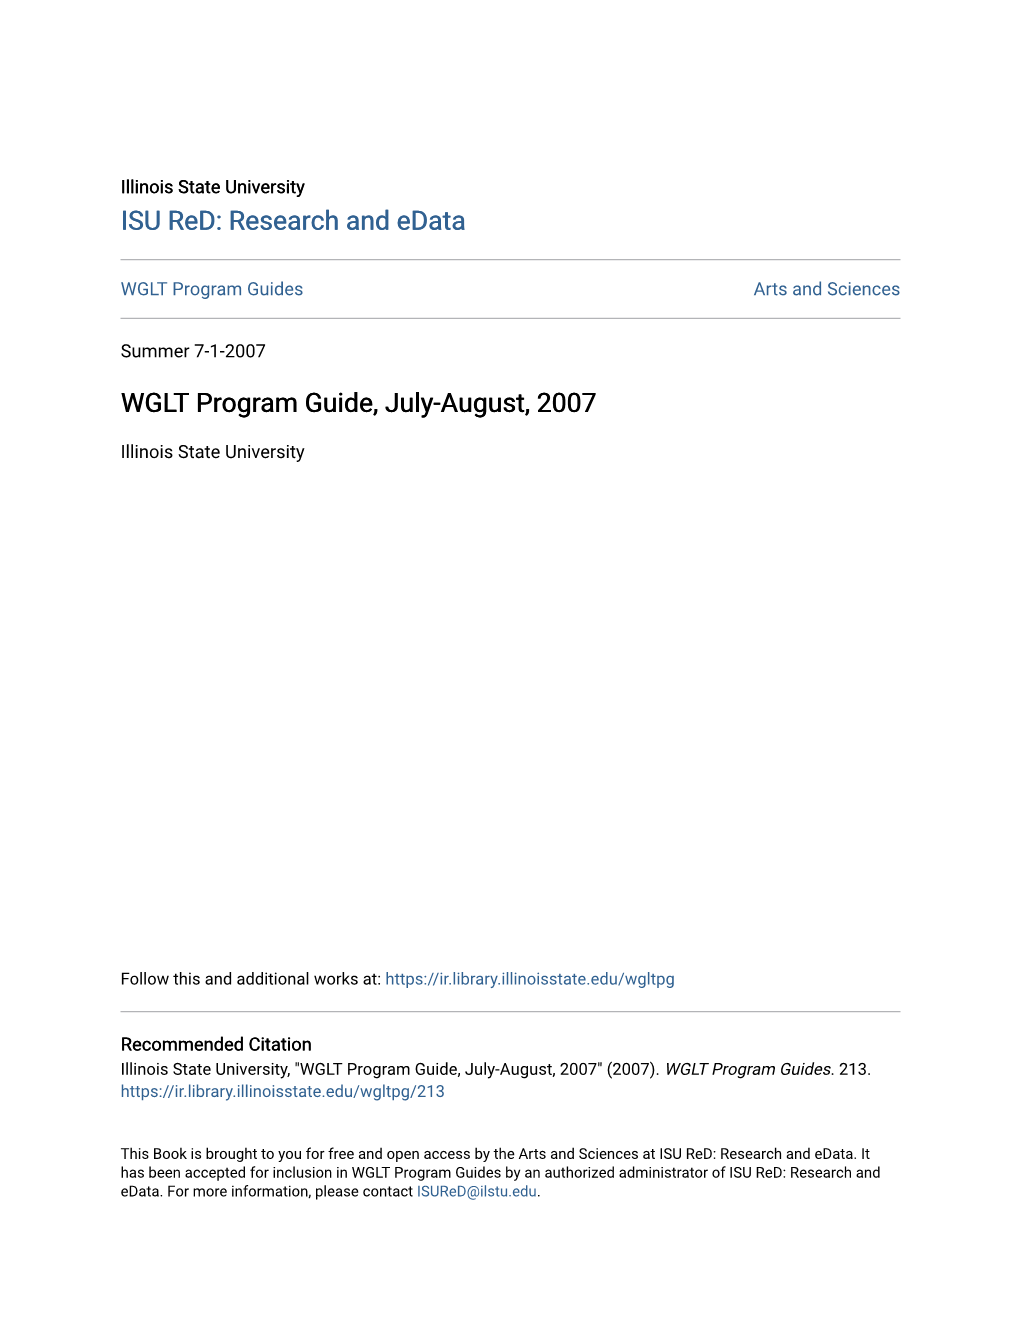 WGLT Program Guide, July-August, 2007